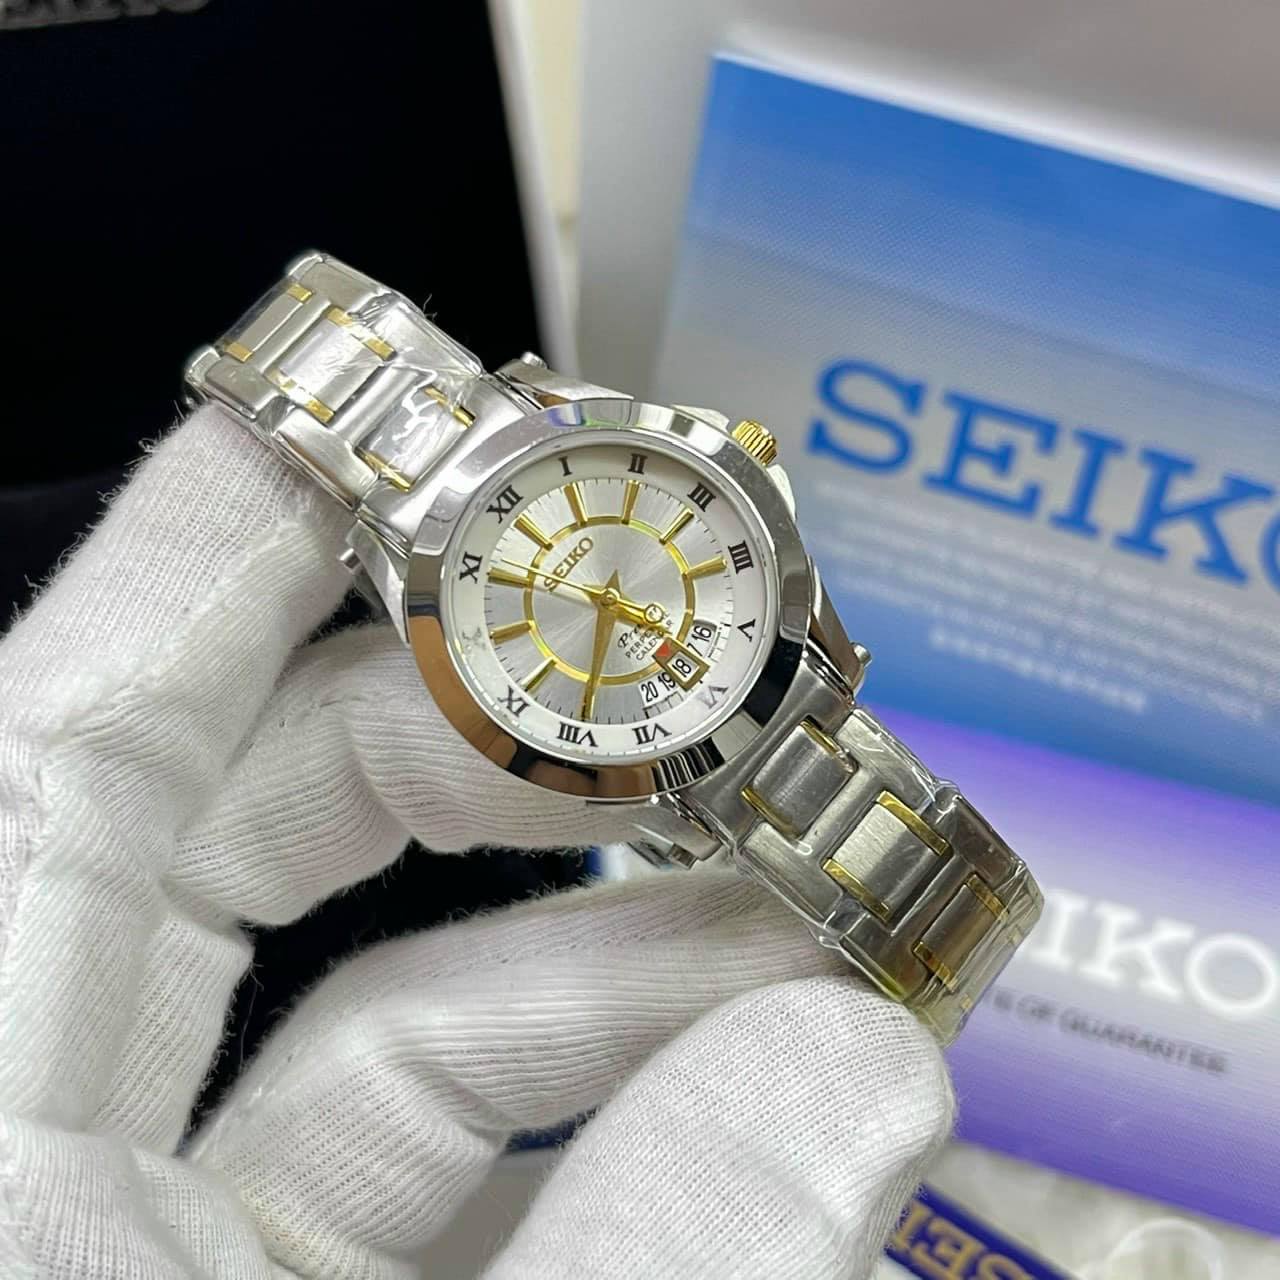 Tổng hợp với hơn 126 về đồng hồ seiko 7d1804 chính hãng hay nhất